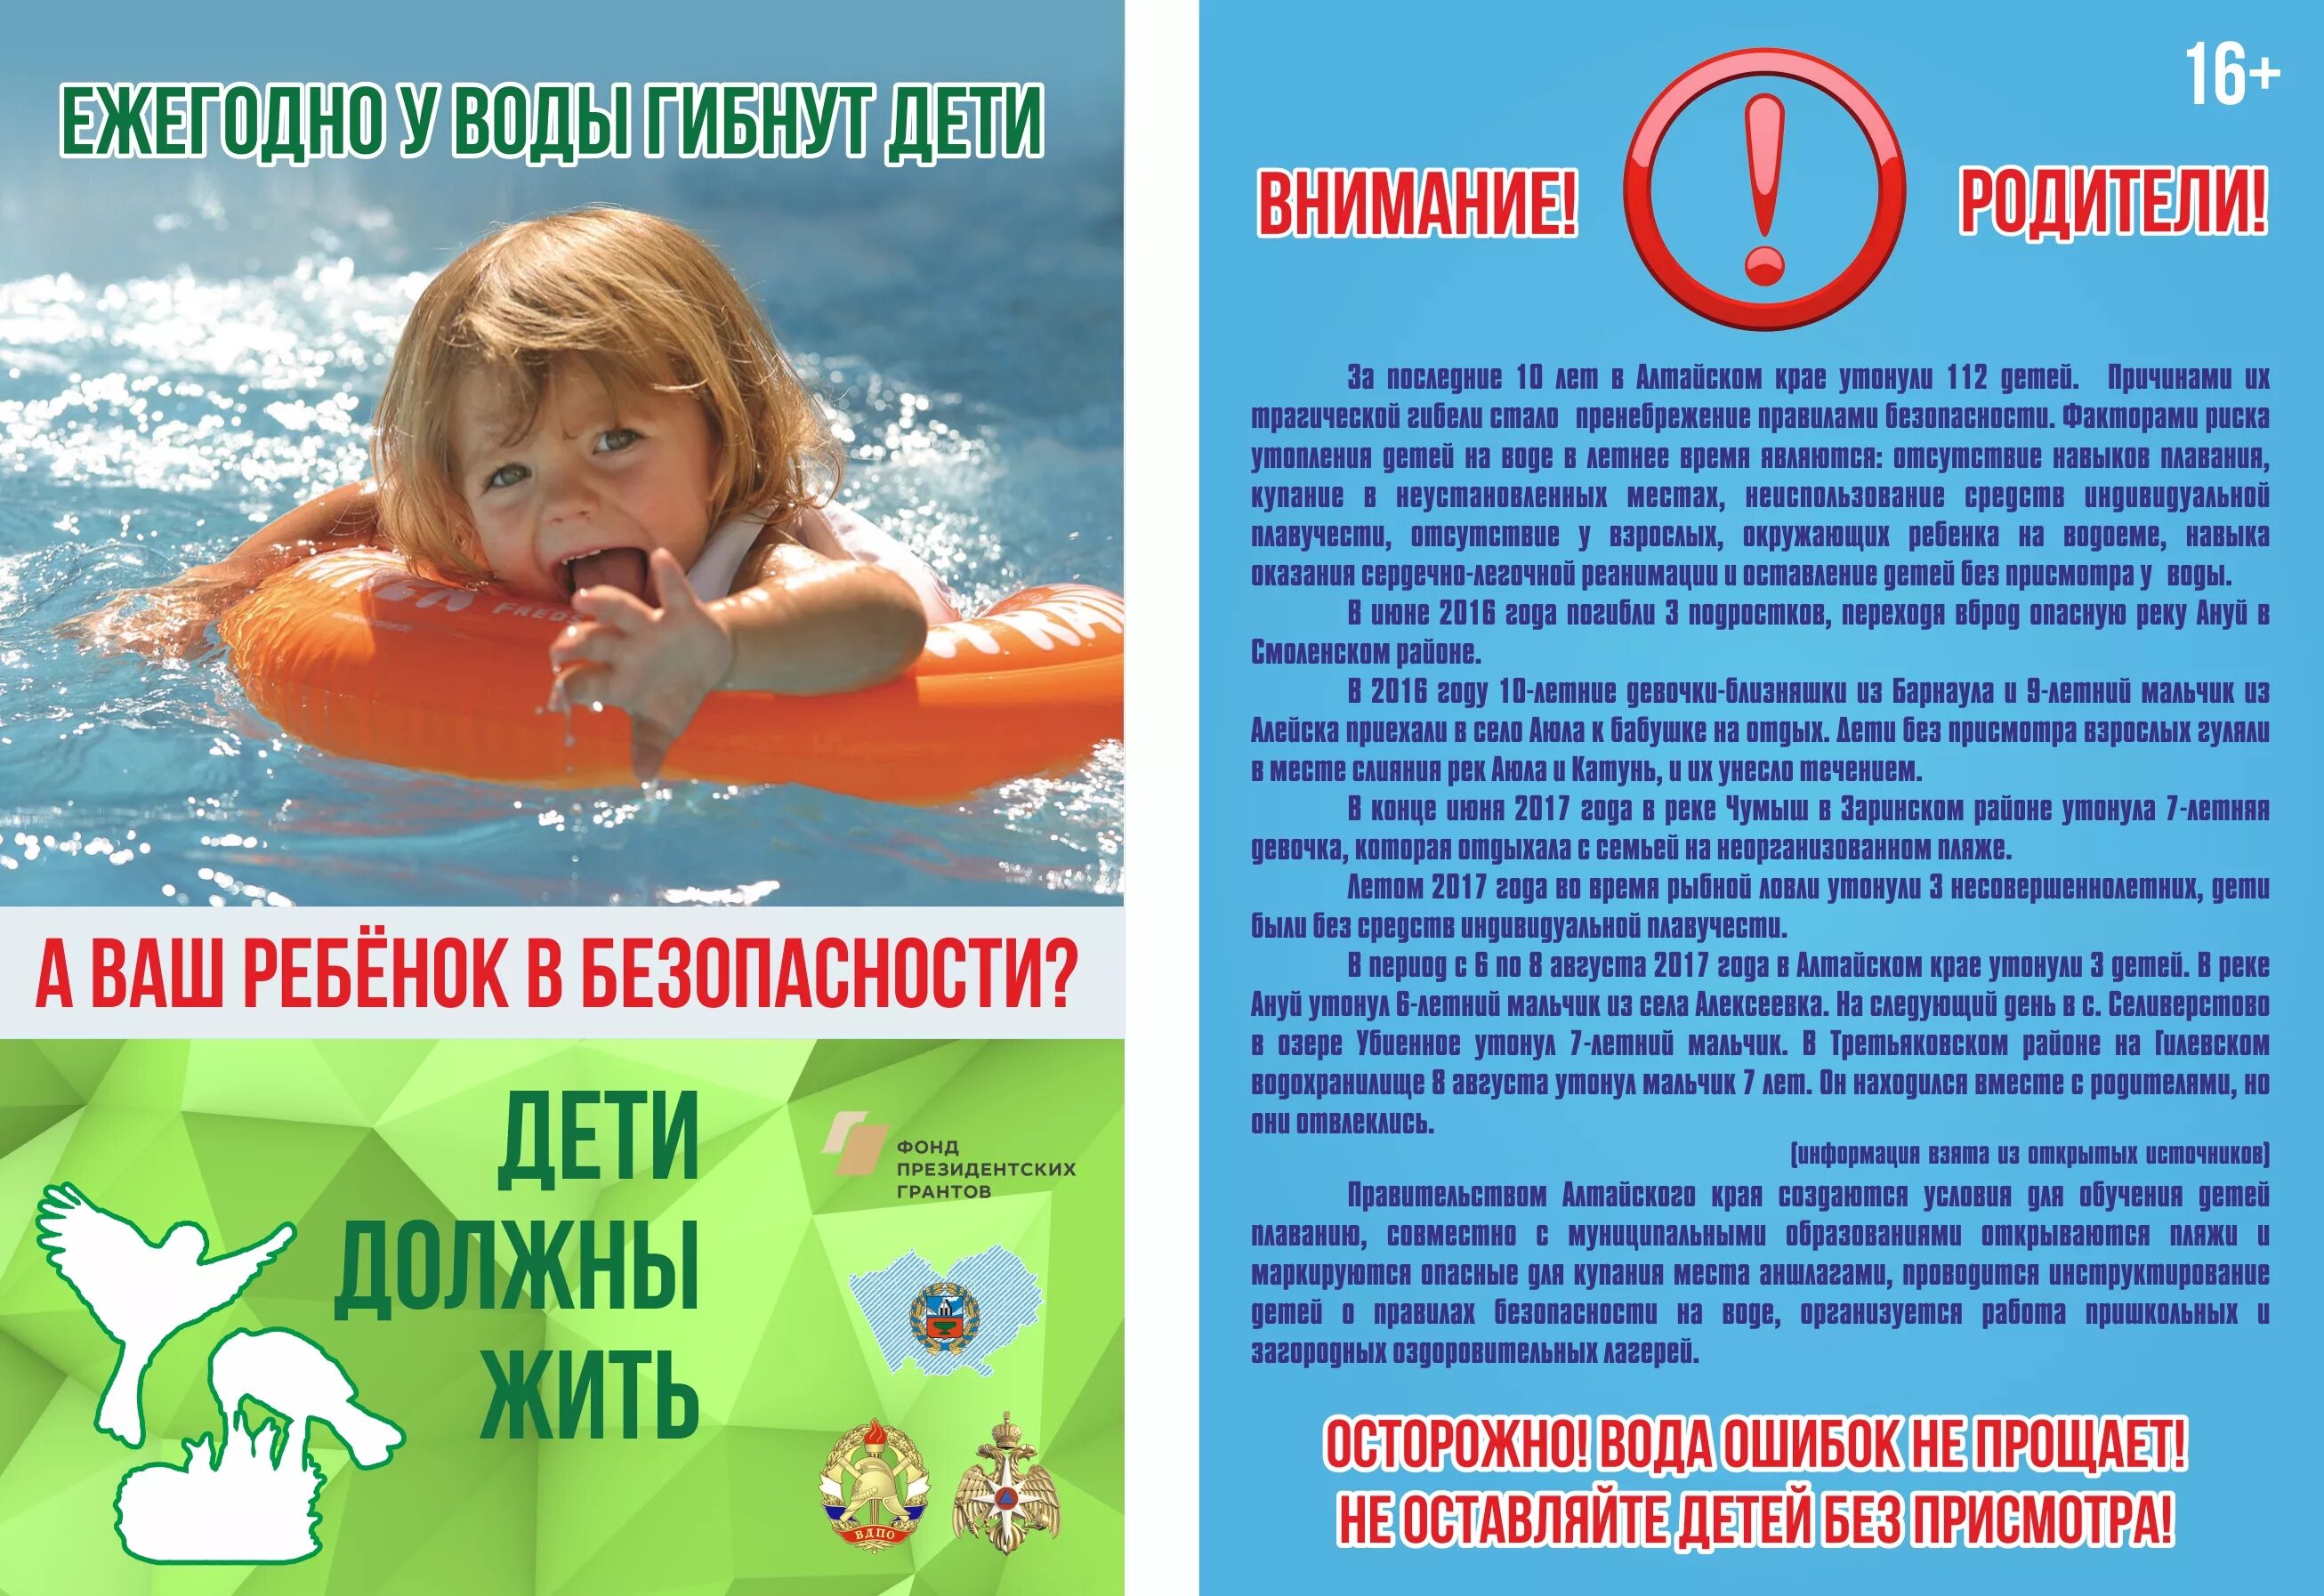 Безопасность на водоемах летом для детей. Безопасность на вордоемахдля детей. Безопасность на воде для детей. Безопасность детей на водоемах в летний период. Обращение к воде